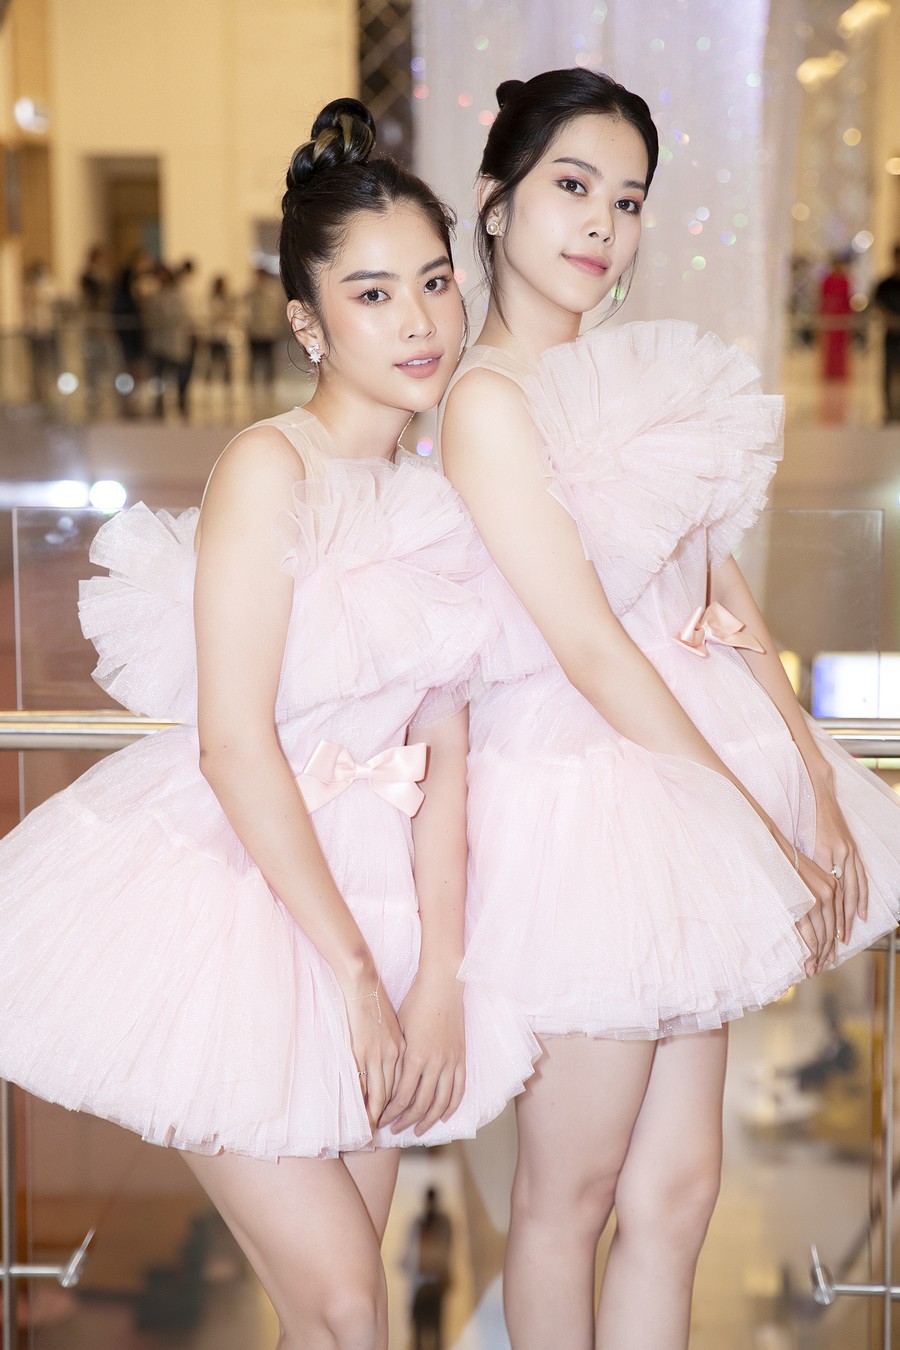  
Nam Anh - Nam Em diện hai mẫu váy ngắn trên gối bồng xòe, hai chị em người đẹp sử dụng cùng một make up và kiểu tóc khiến cặp sao càng thêm giống nhau. 